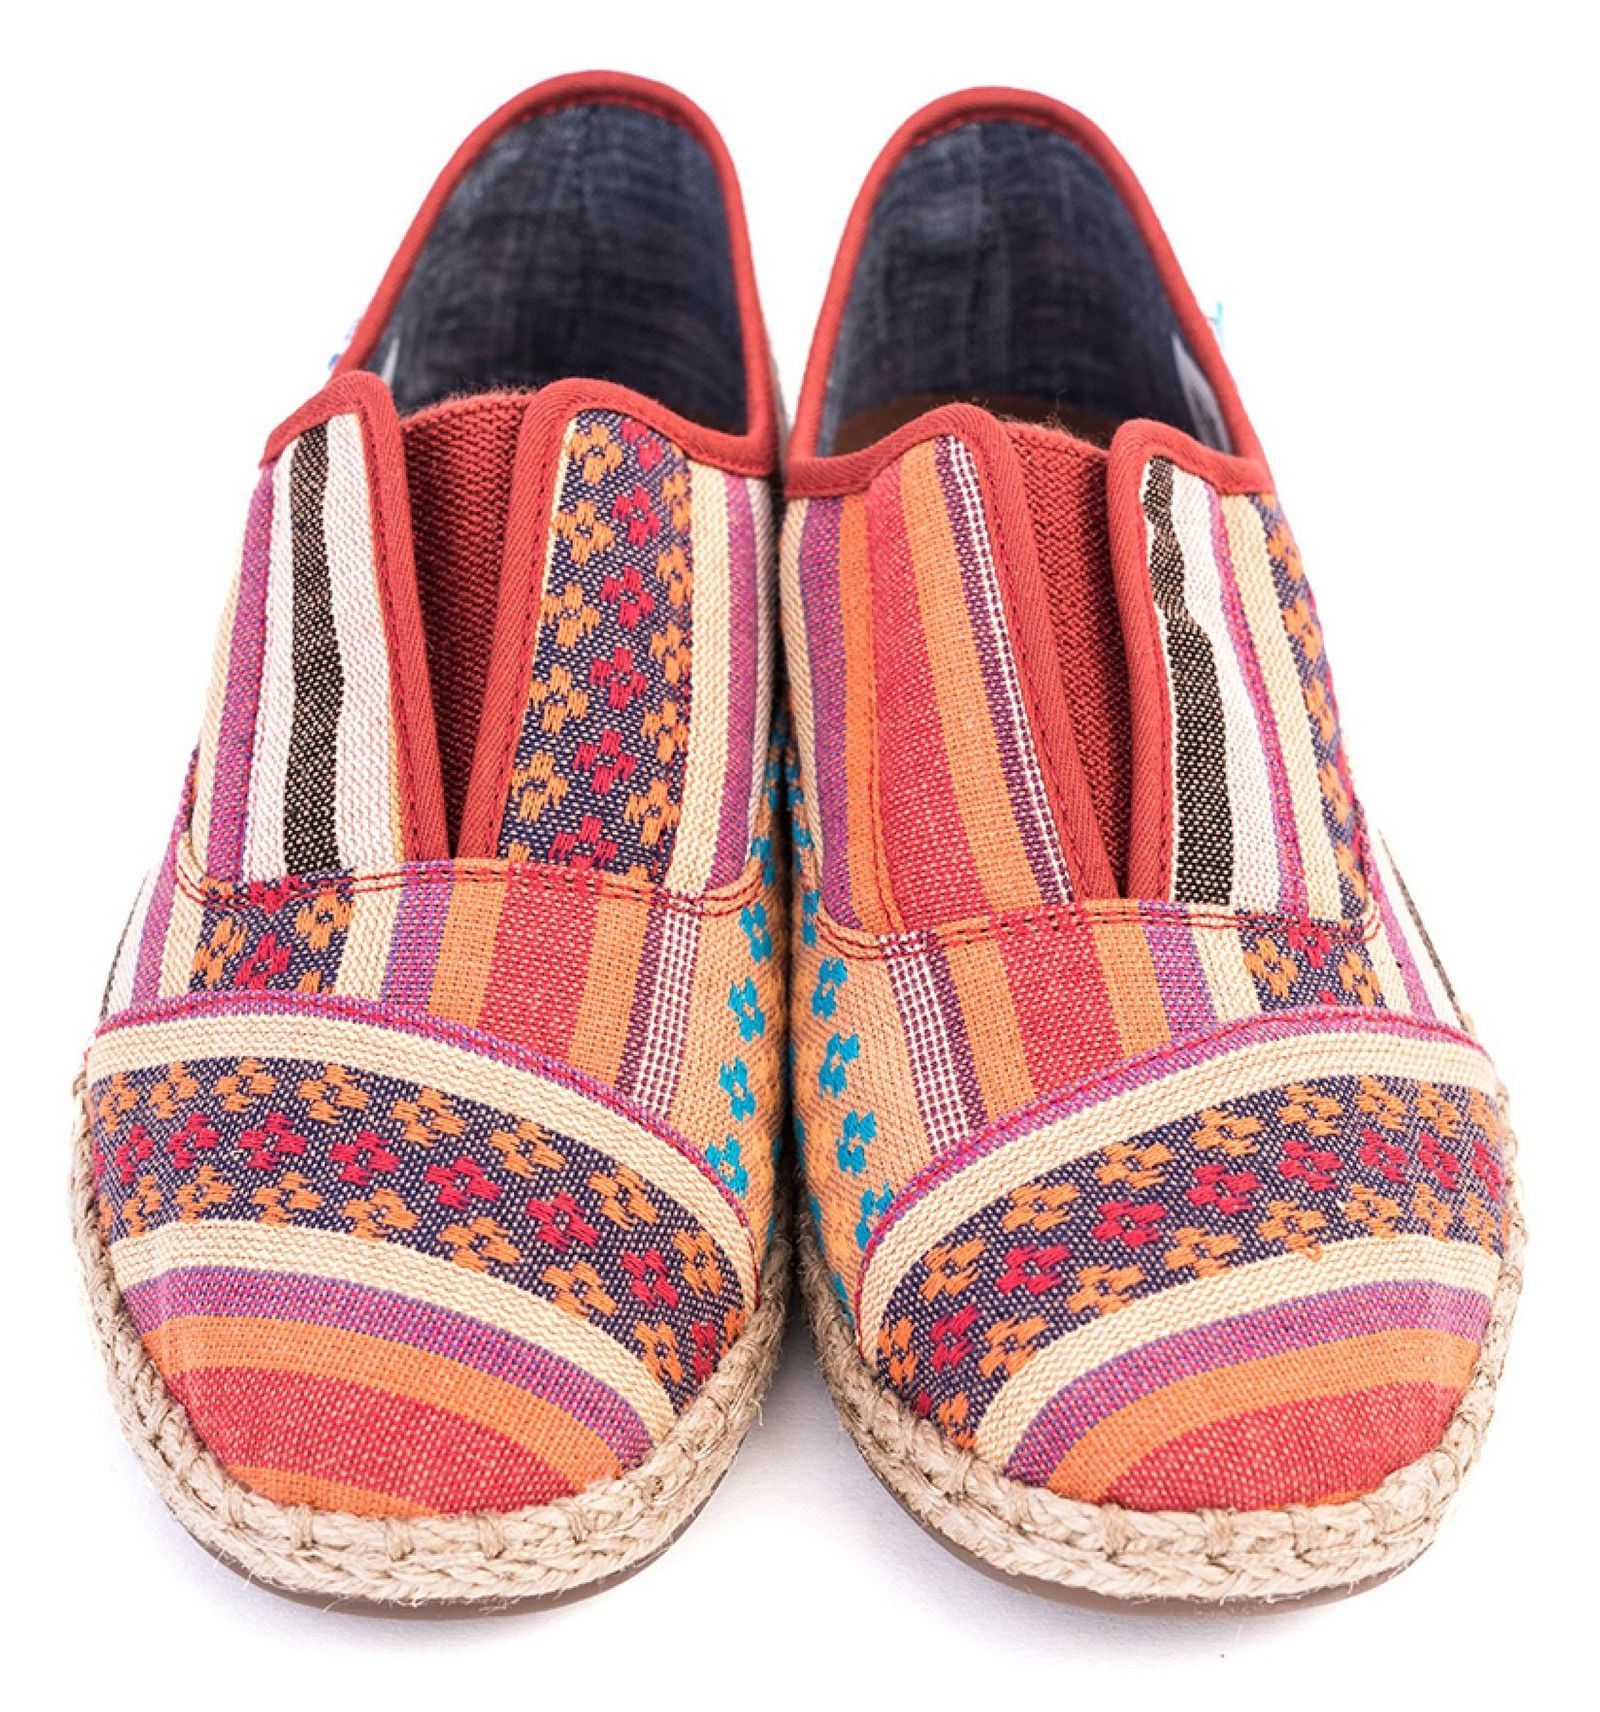 کفش تخت نخی زنانه - تامز - راه راه رنگي طرح منطقه کاين - 5